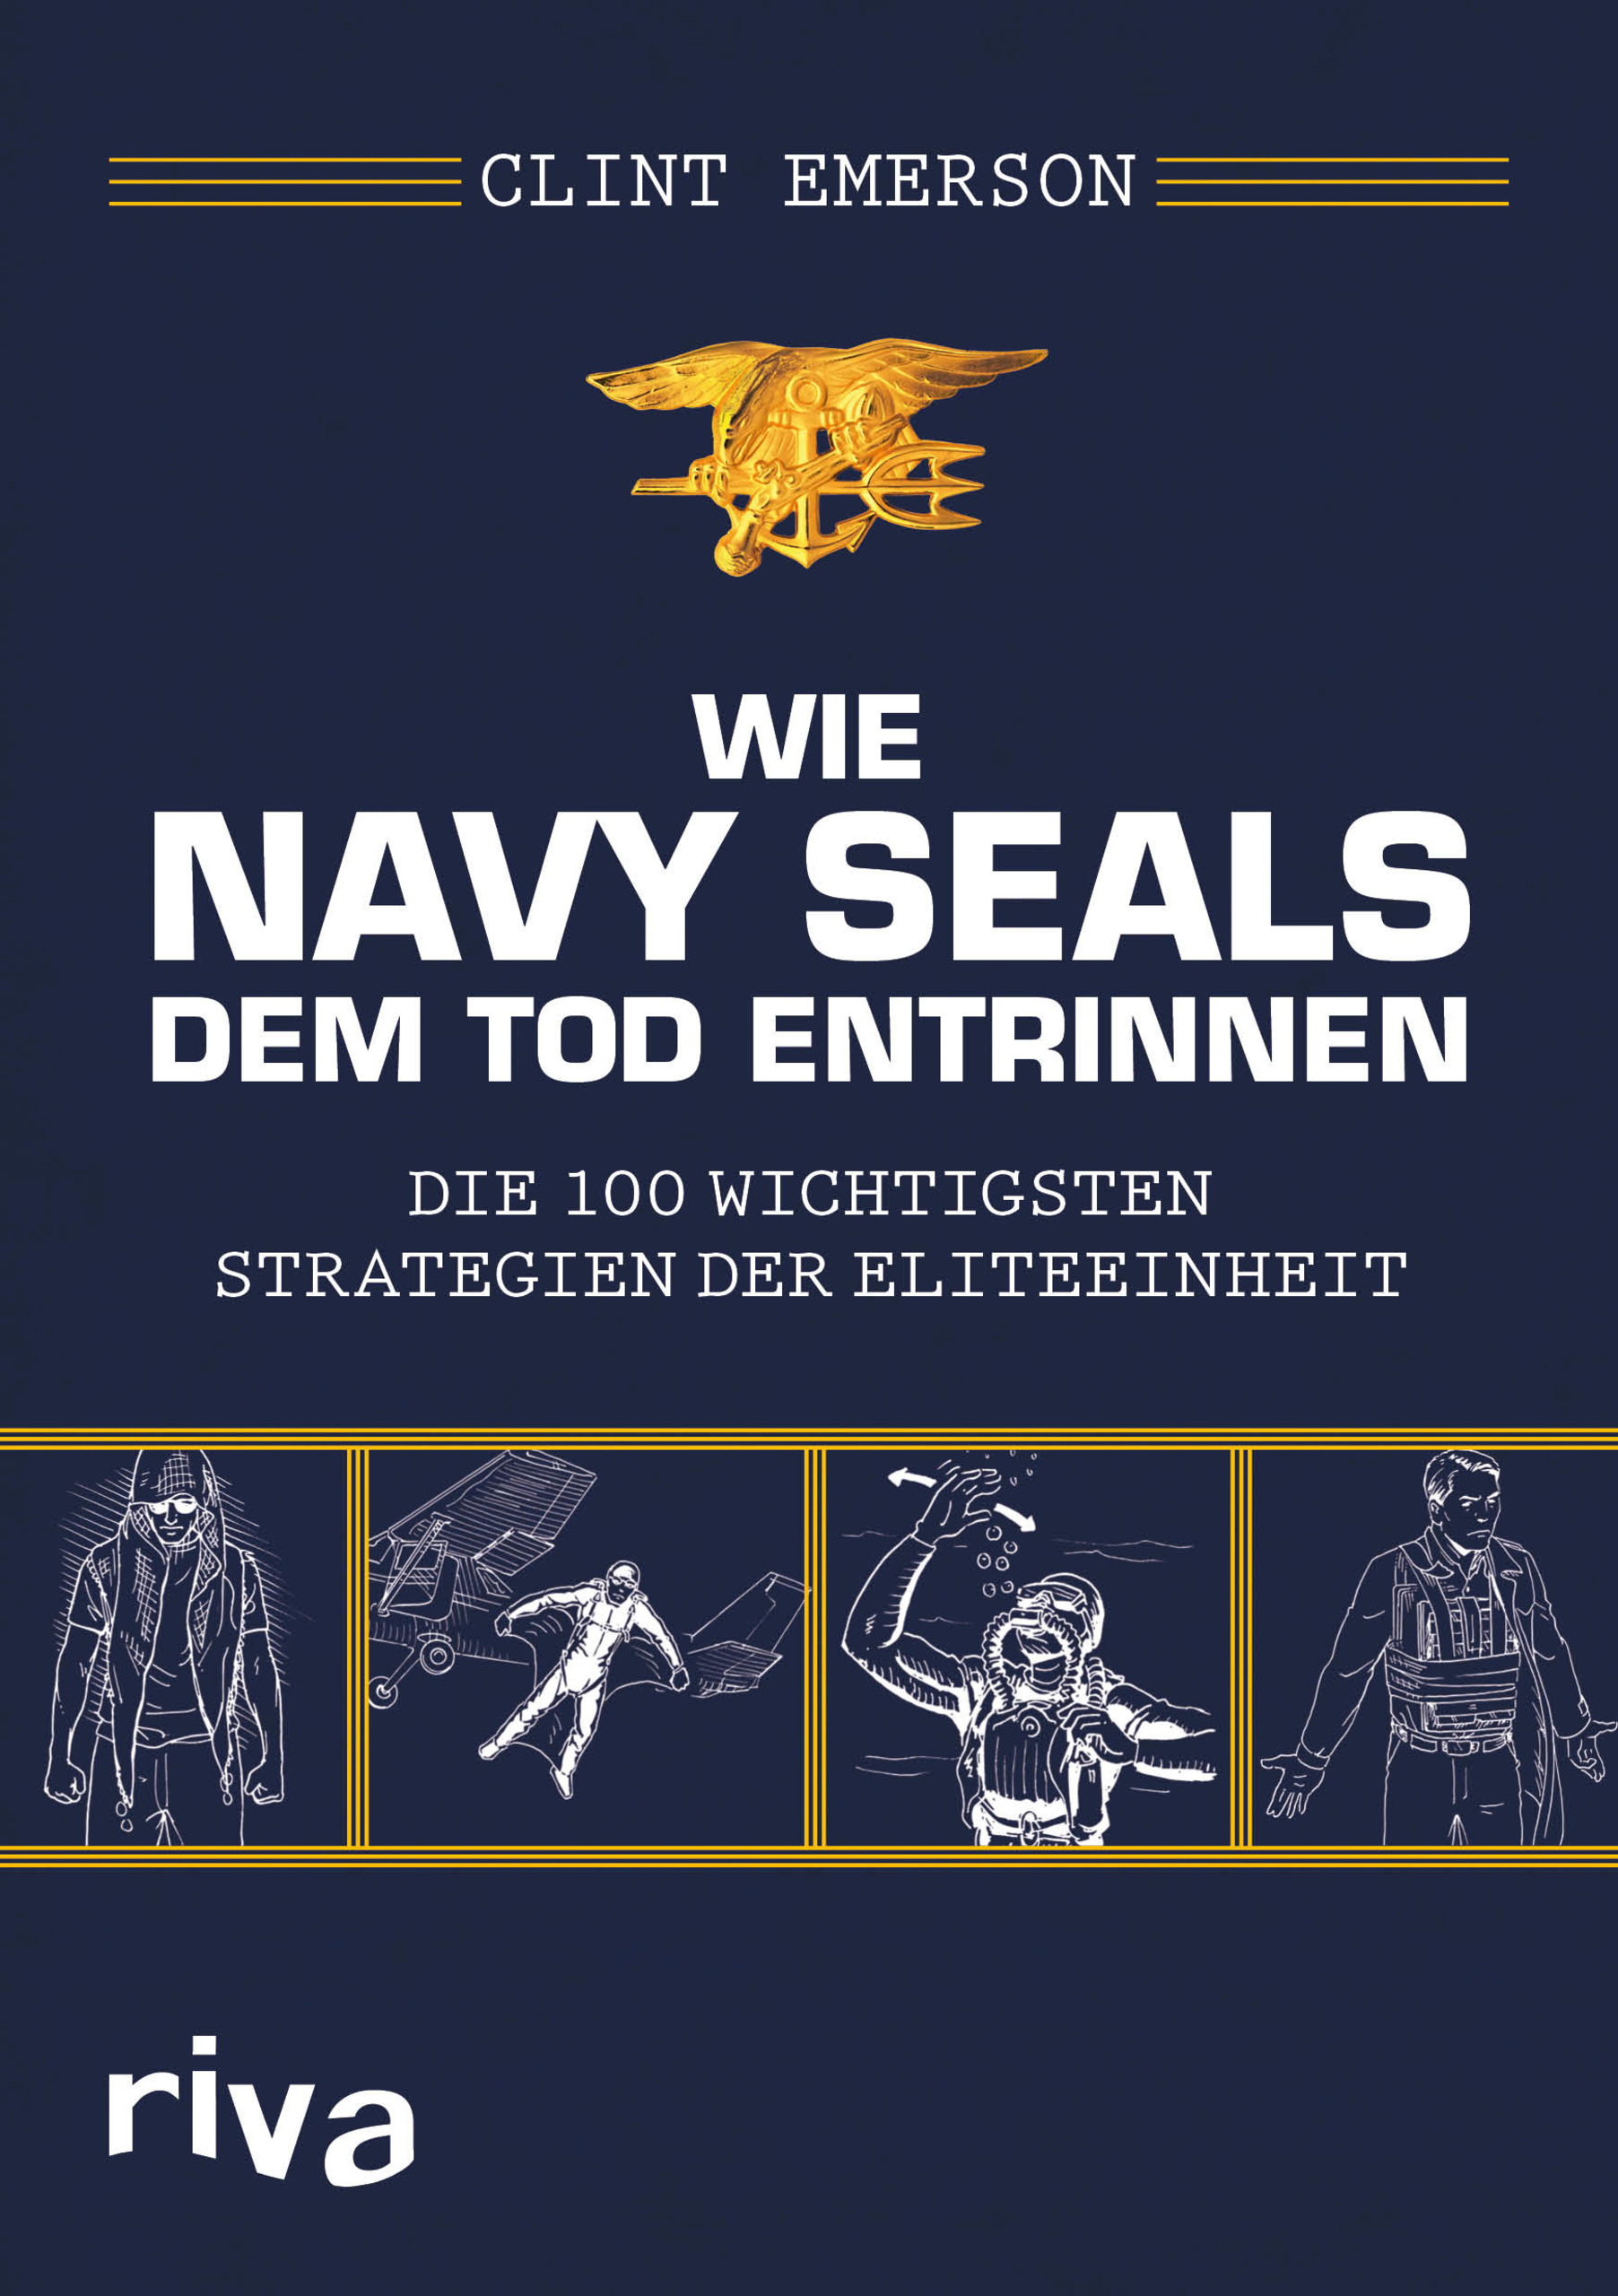 Clint Emerson - Wie Navy Seals dem Tod entrinnen